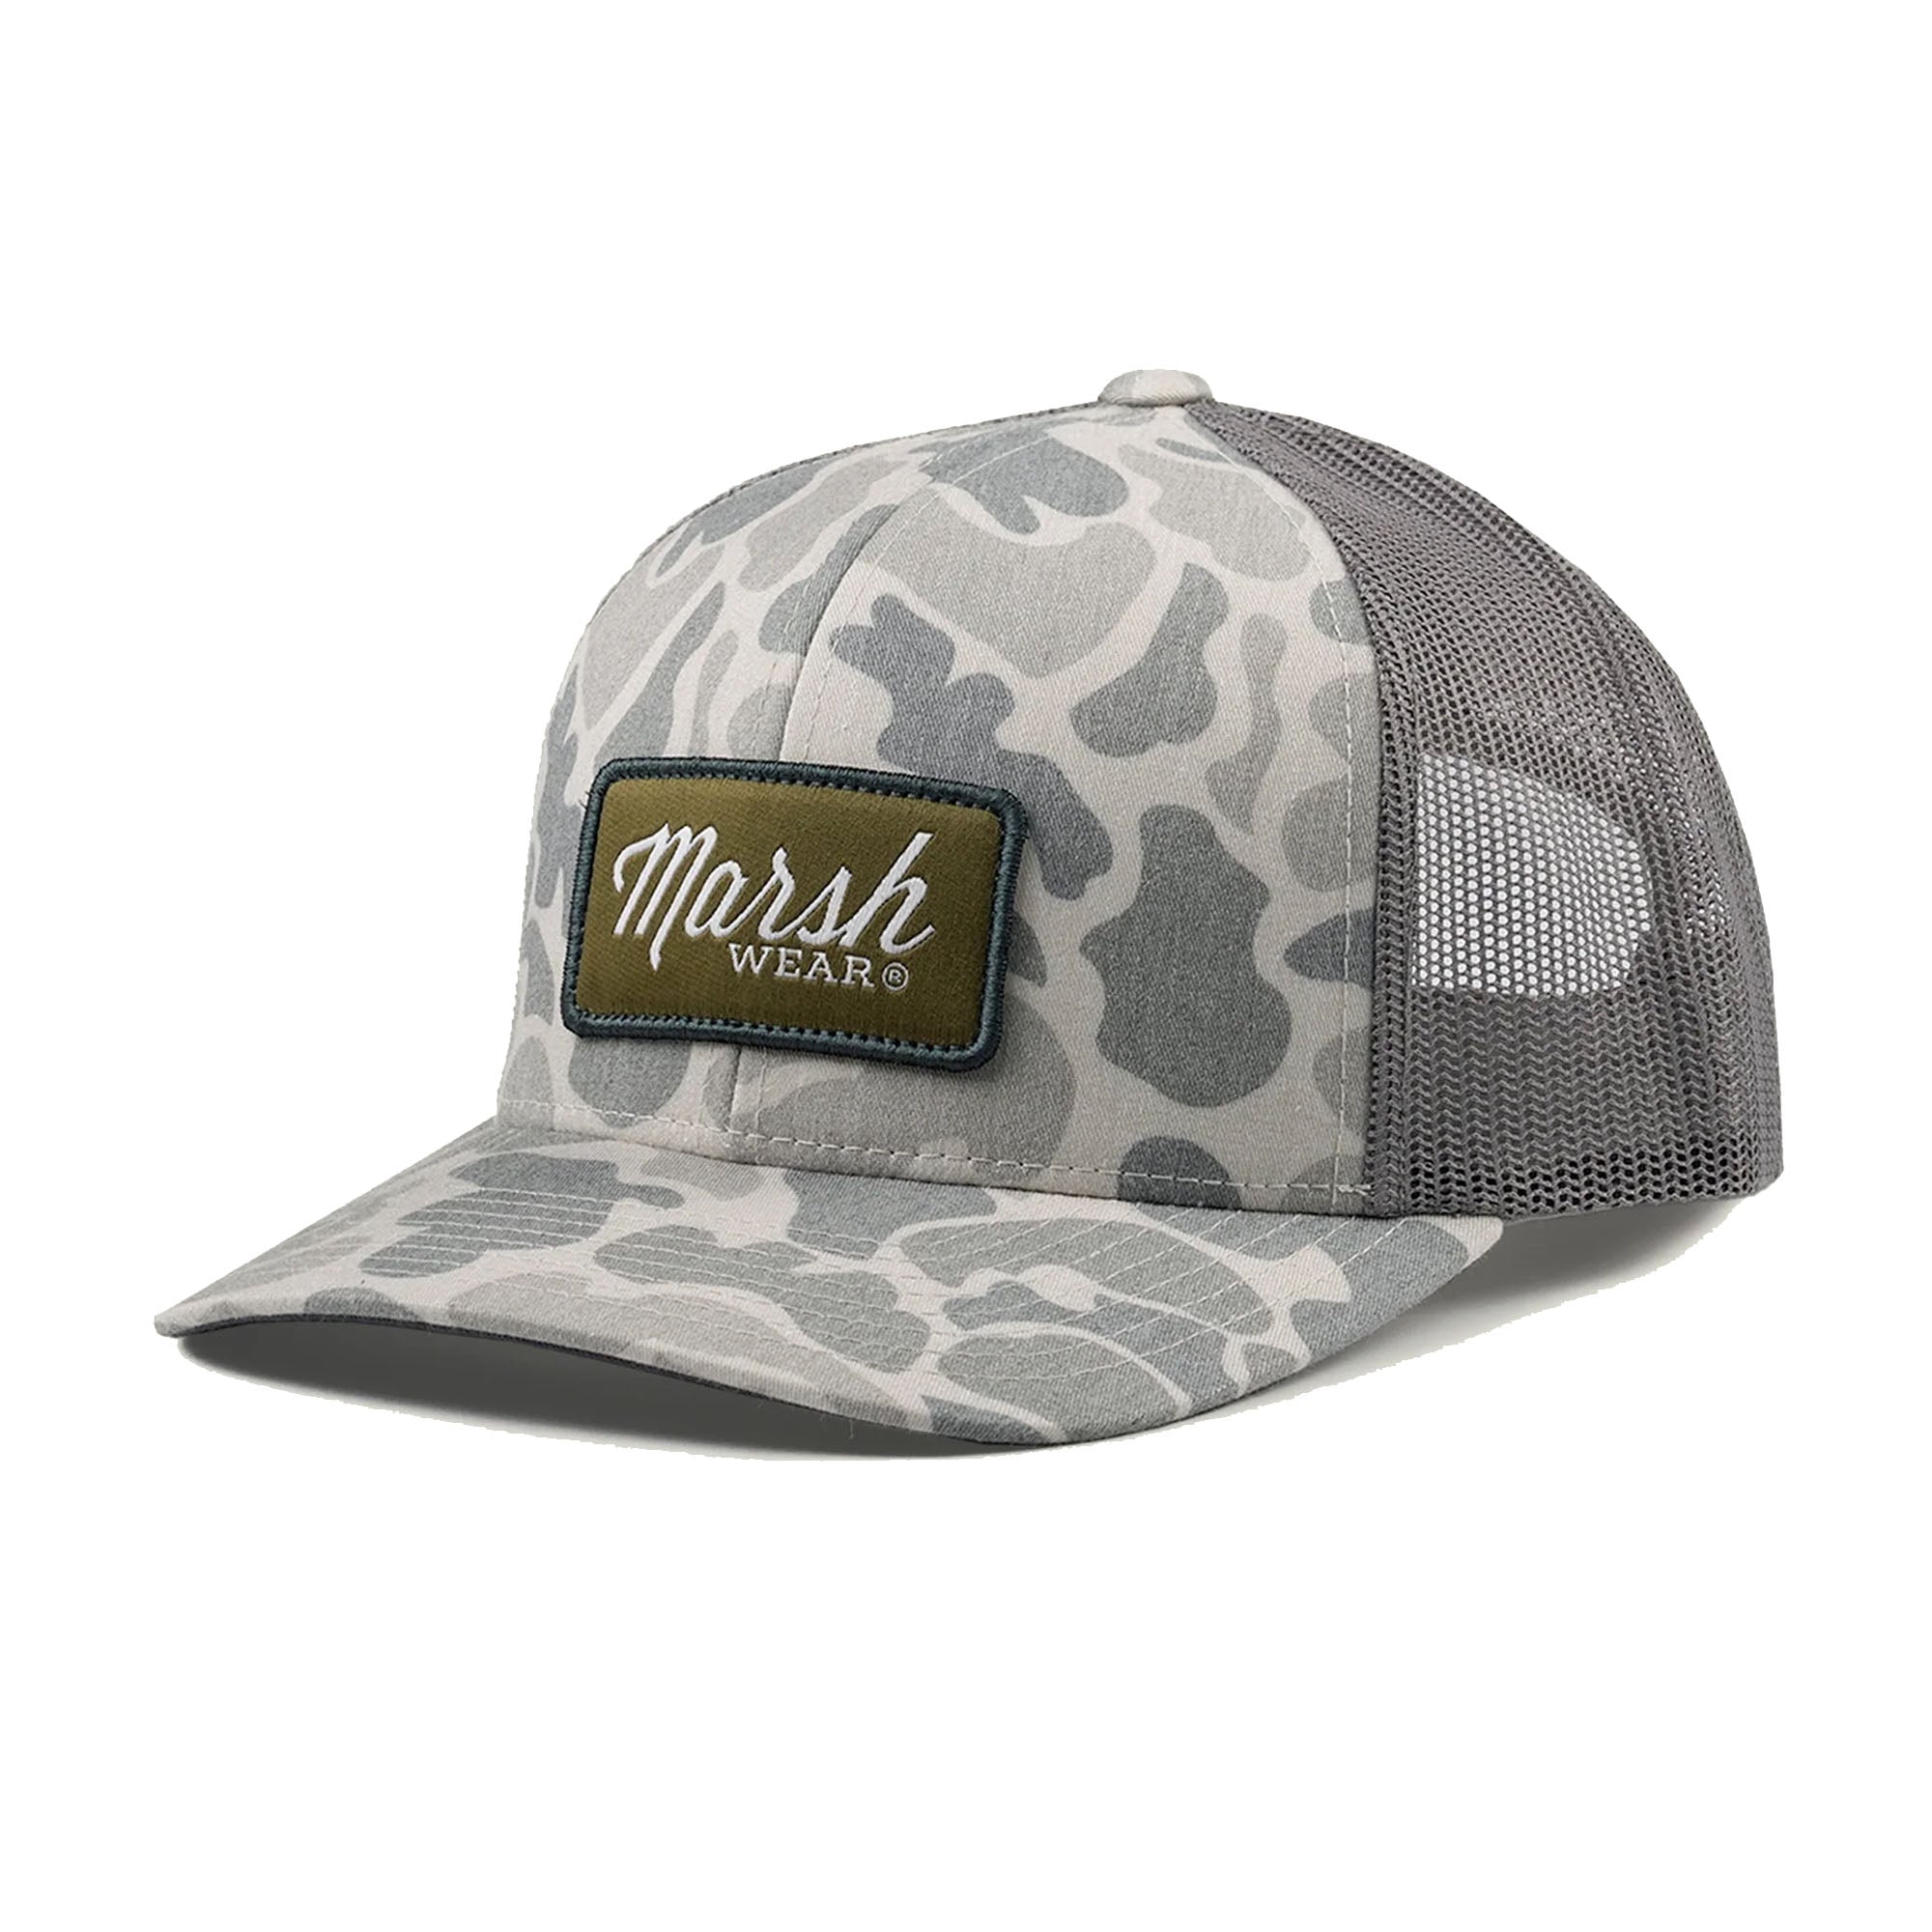 Marsh Wear Script Men's Trucker Hat